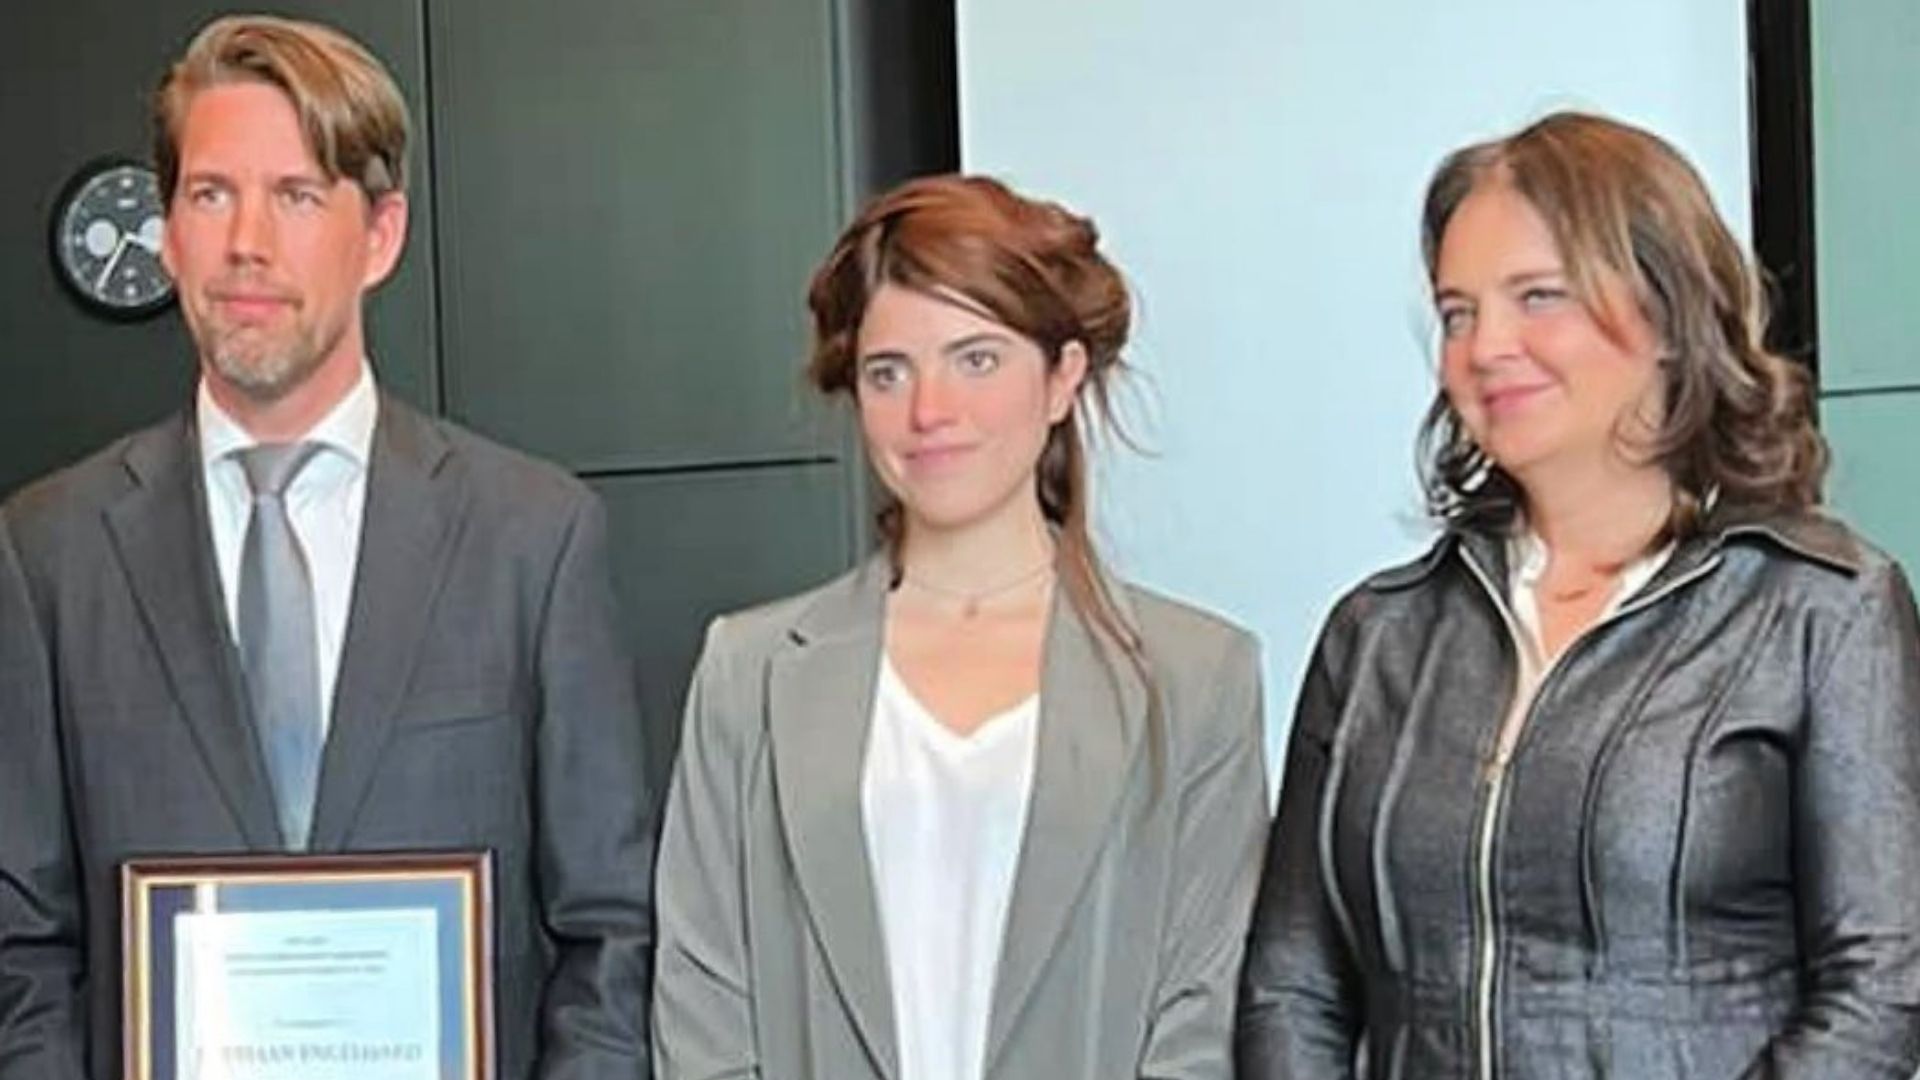 El Ministerio de Exteriores de Holanda se hizo eco del encuentro, donde el diplomático Bastiaan Engelhard recibió un premio de CADAL